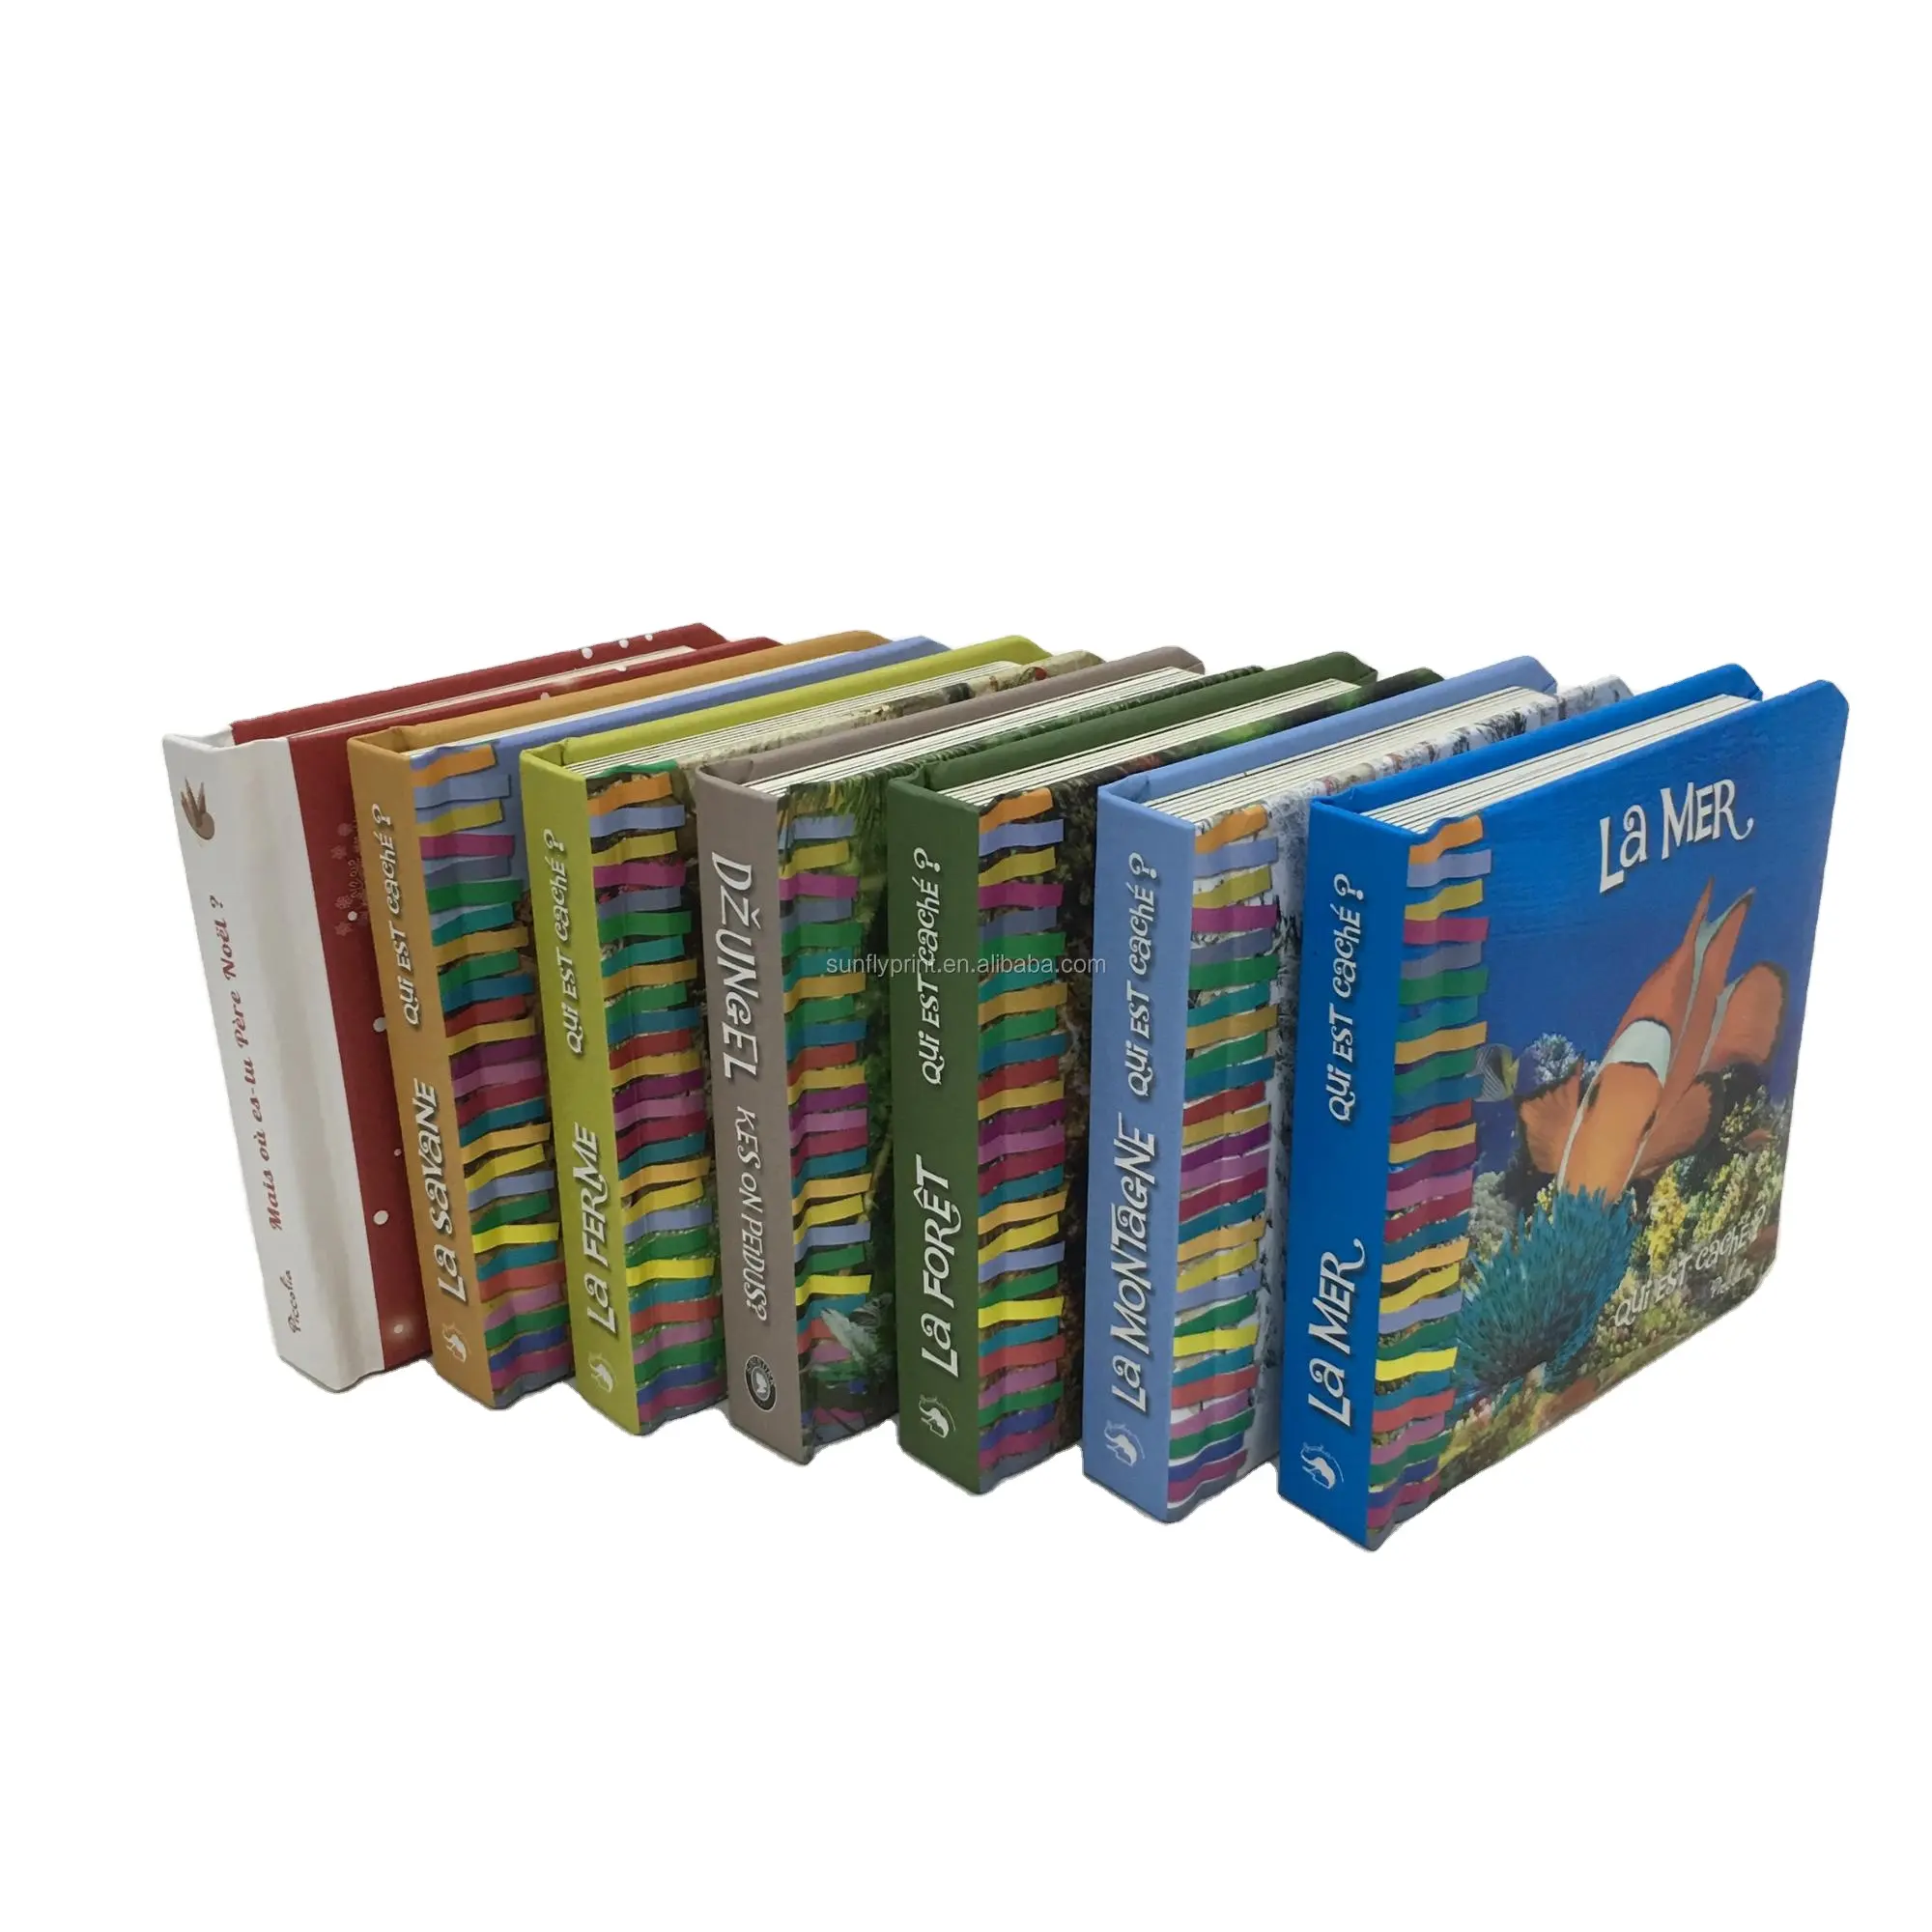 Ustomied-tablero de cartón nglish Story para niños, impresión de libros infantiles, costes de impresión